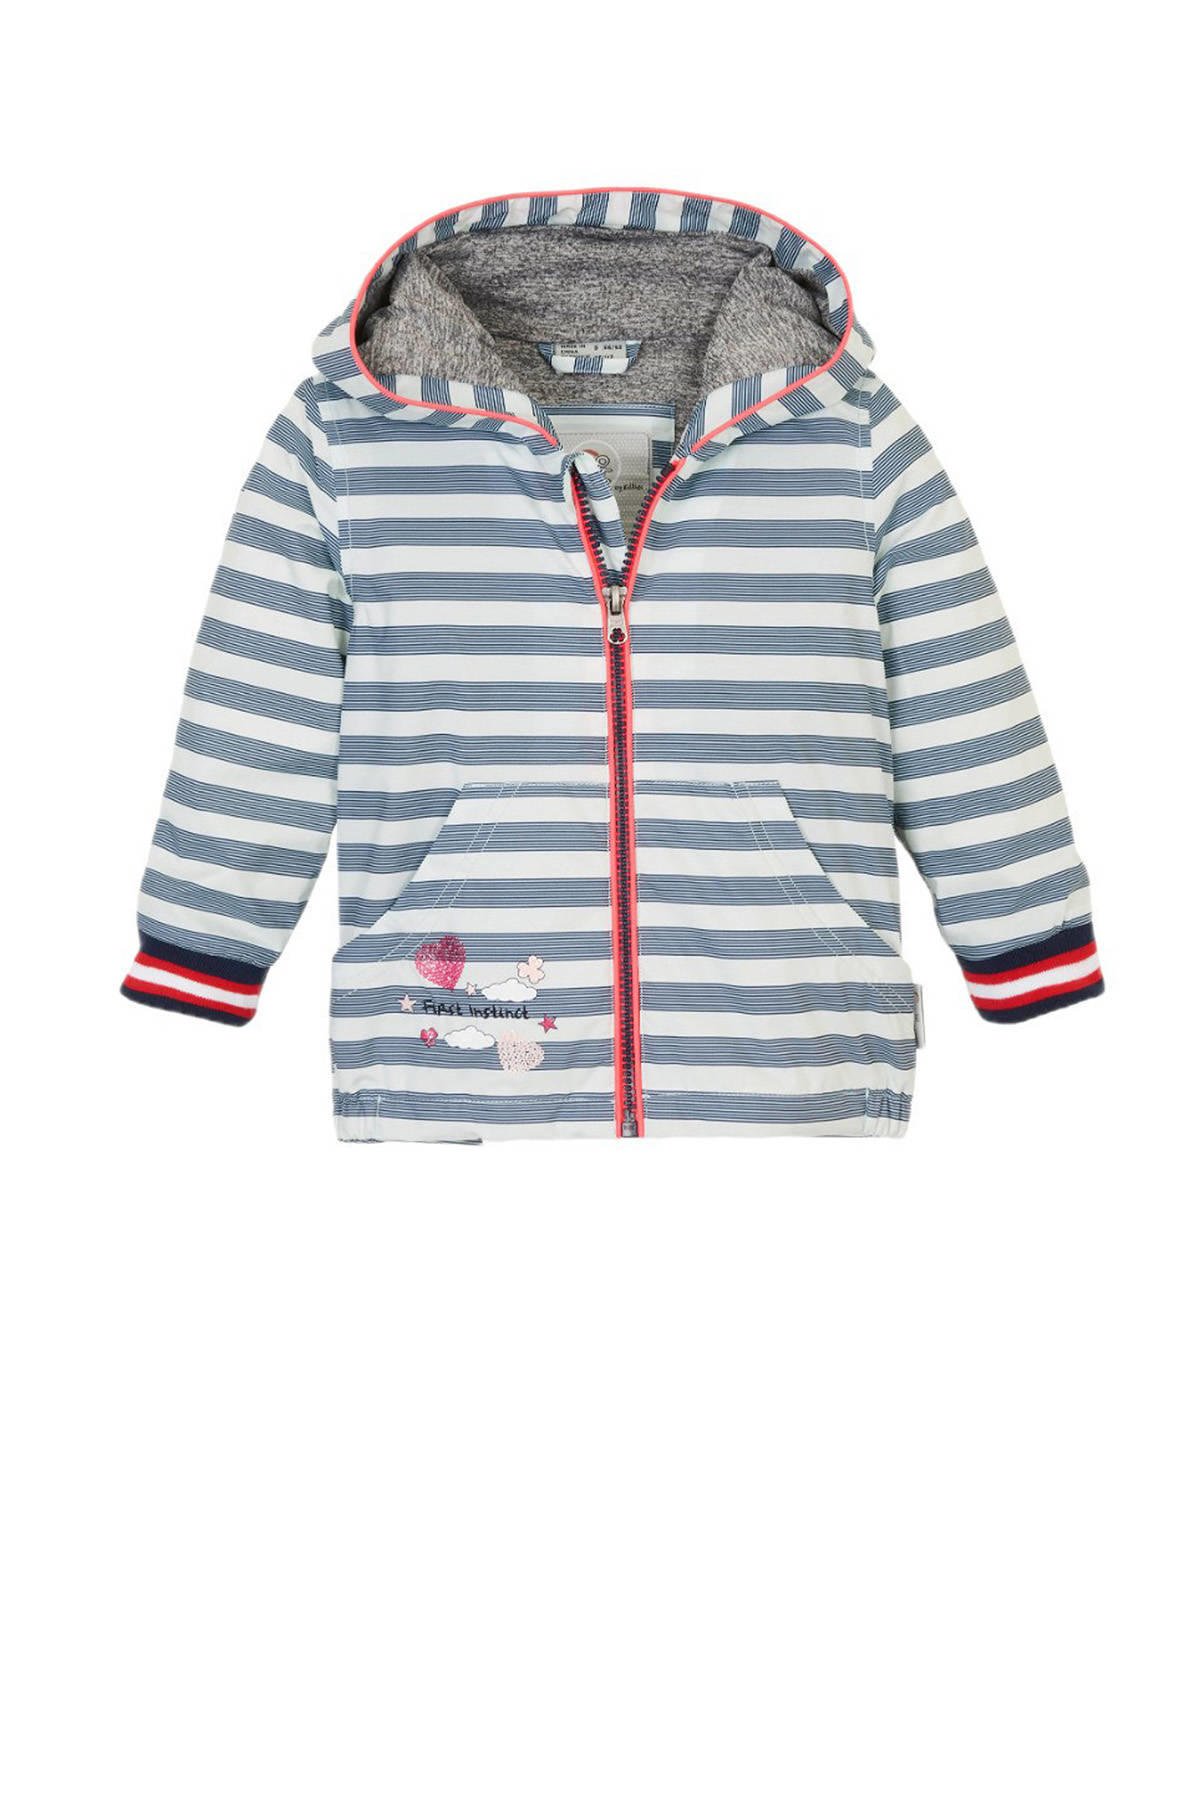 Bestrooi Vertrouwelijk Vergadering First Instinct kids outdoor jas wit/lichtblauw/rood | wehkamp